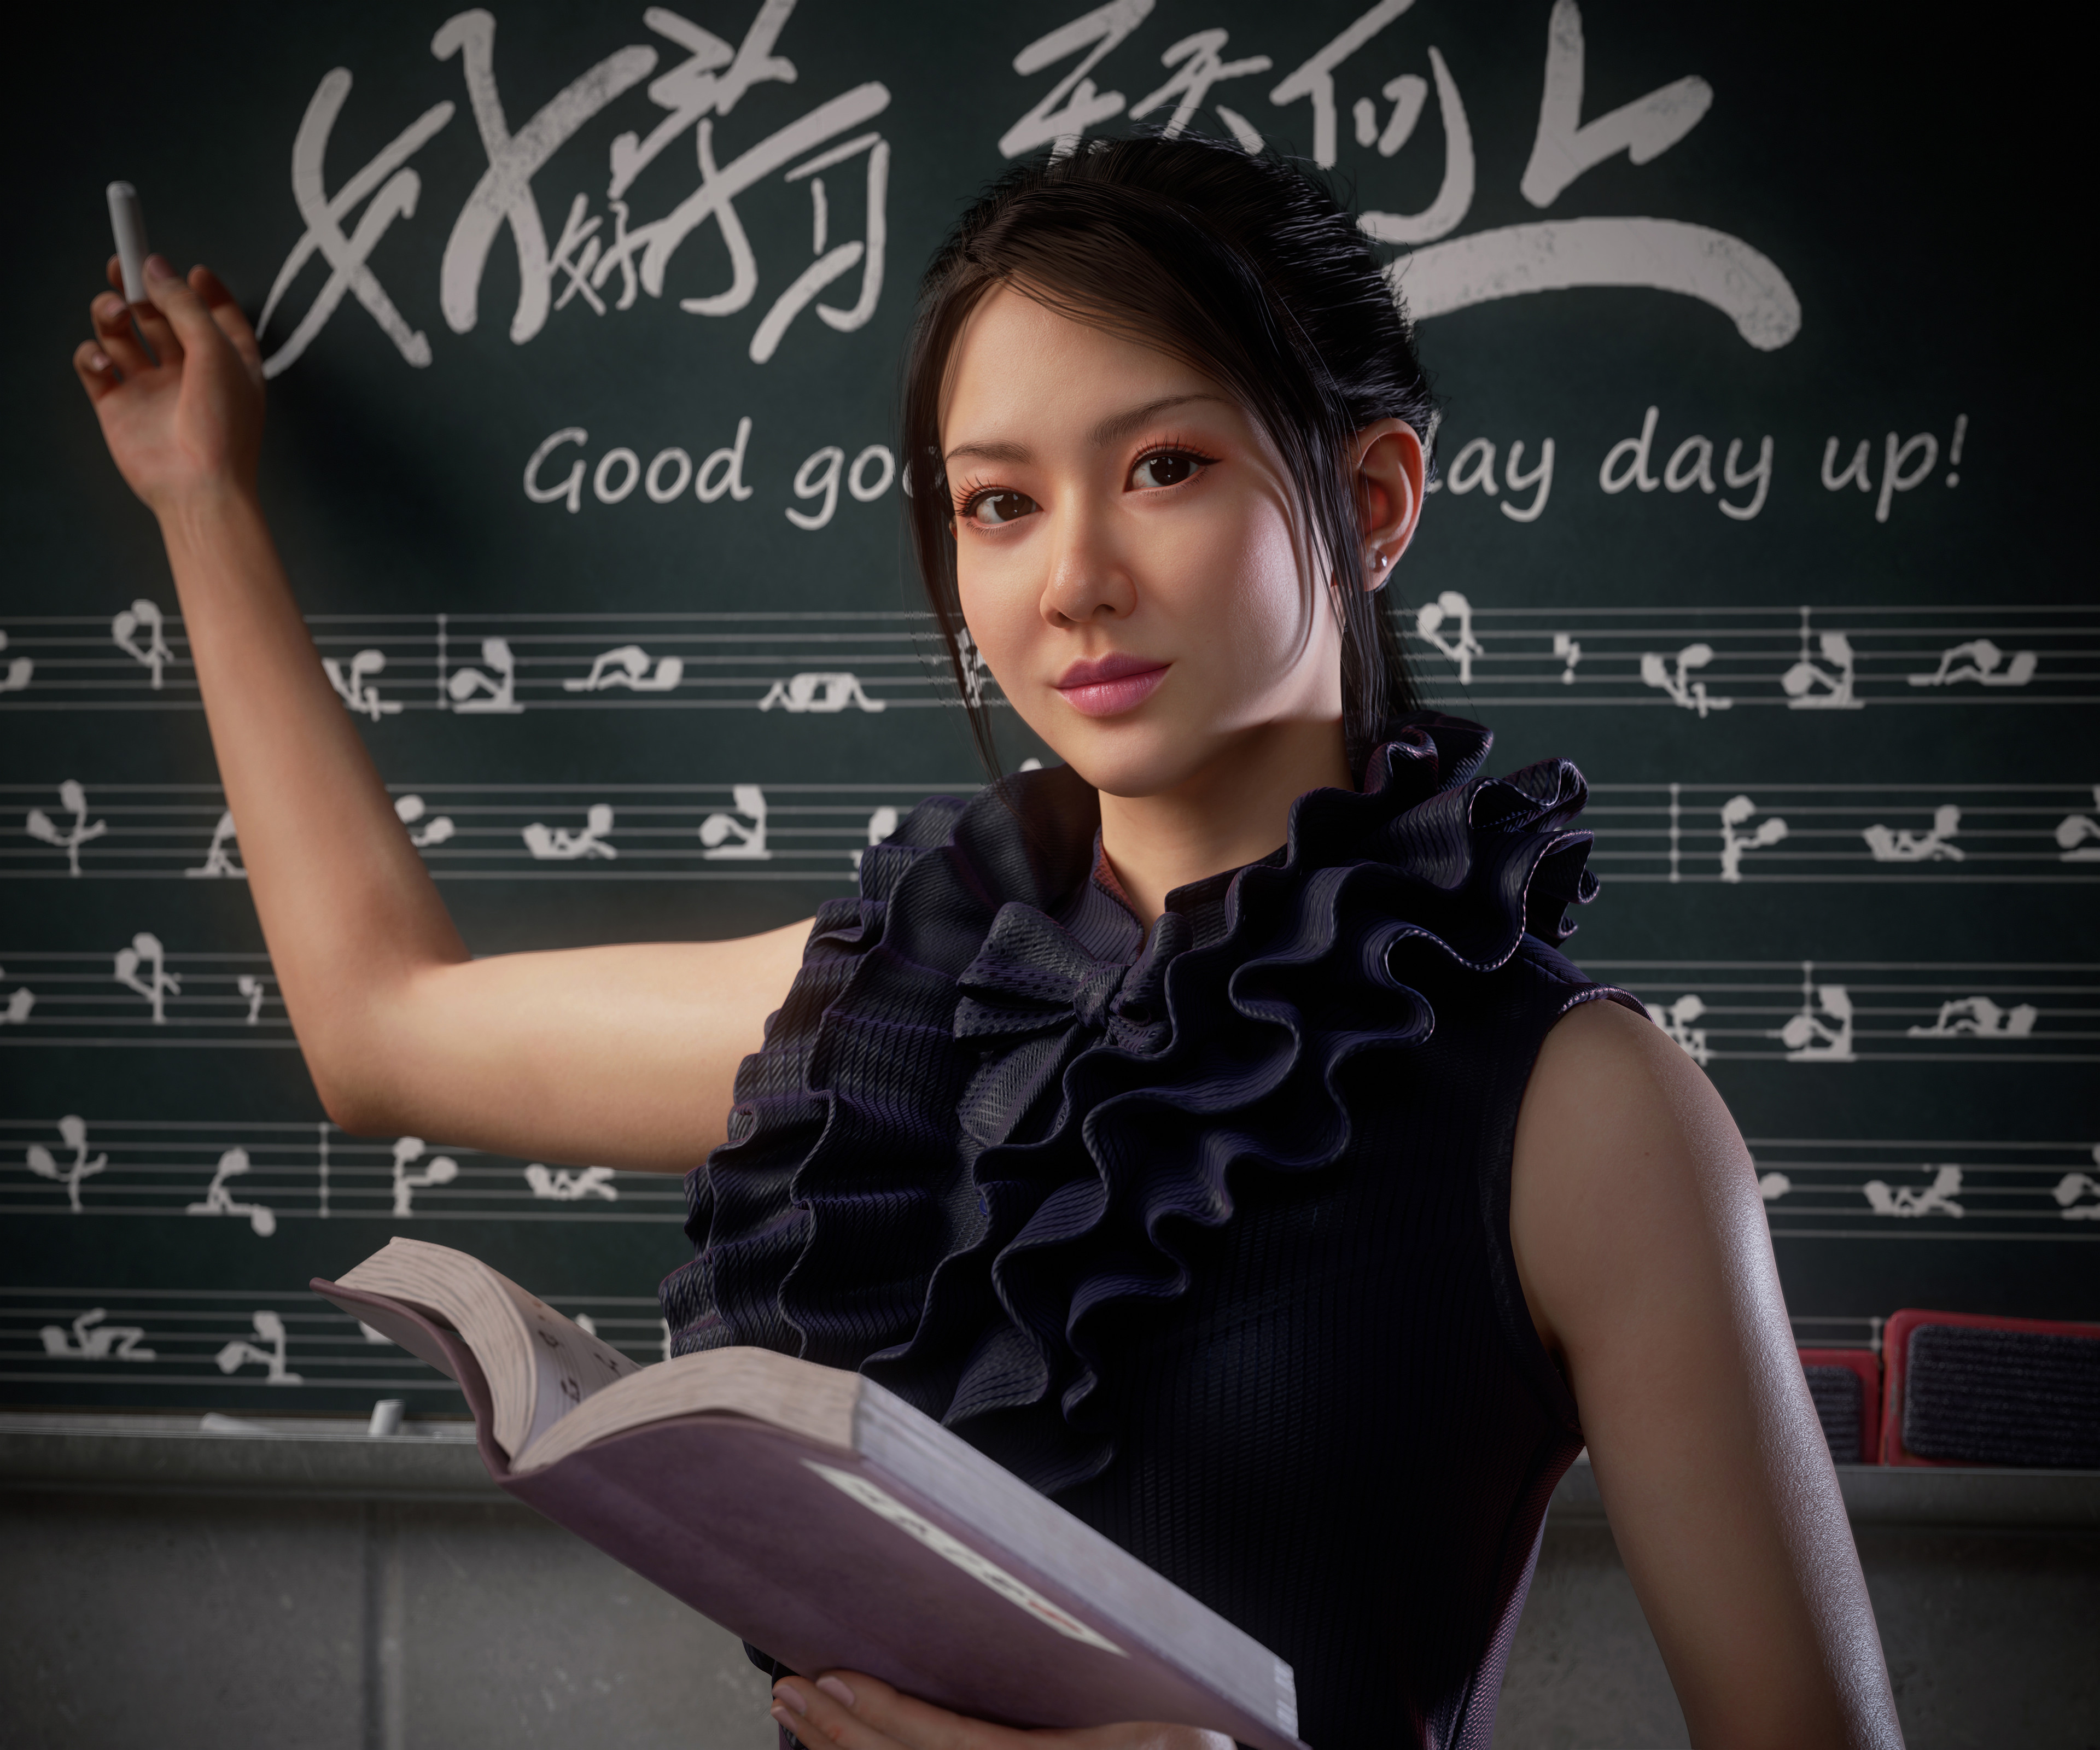 Zhang Fuzeng CGi Women Dark Hair Teachers Chalkboard Looking At Viewer Smiling Asian 3840x3200